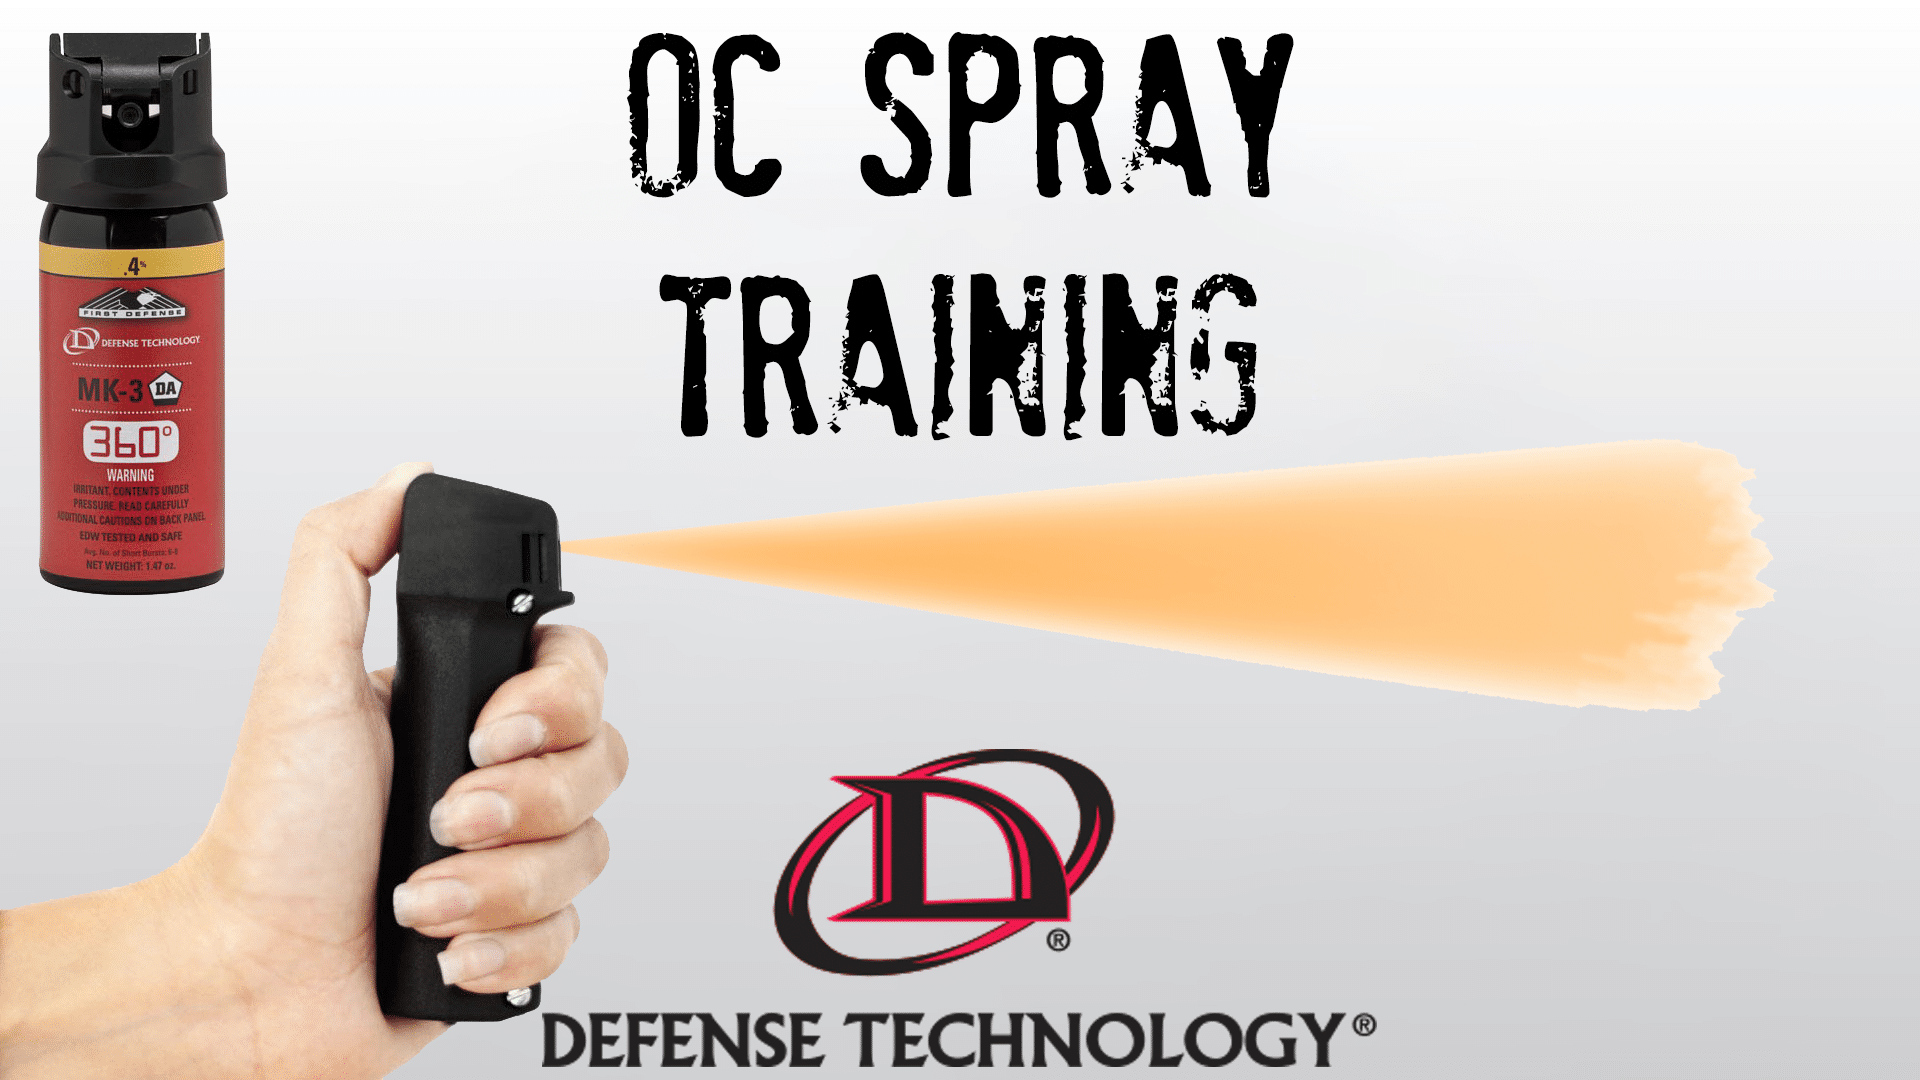 OC Spray Training